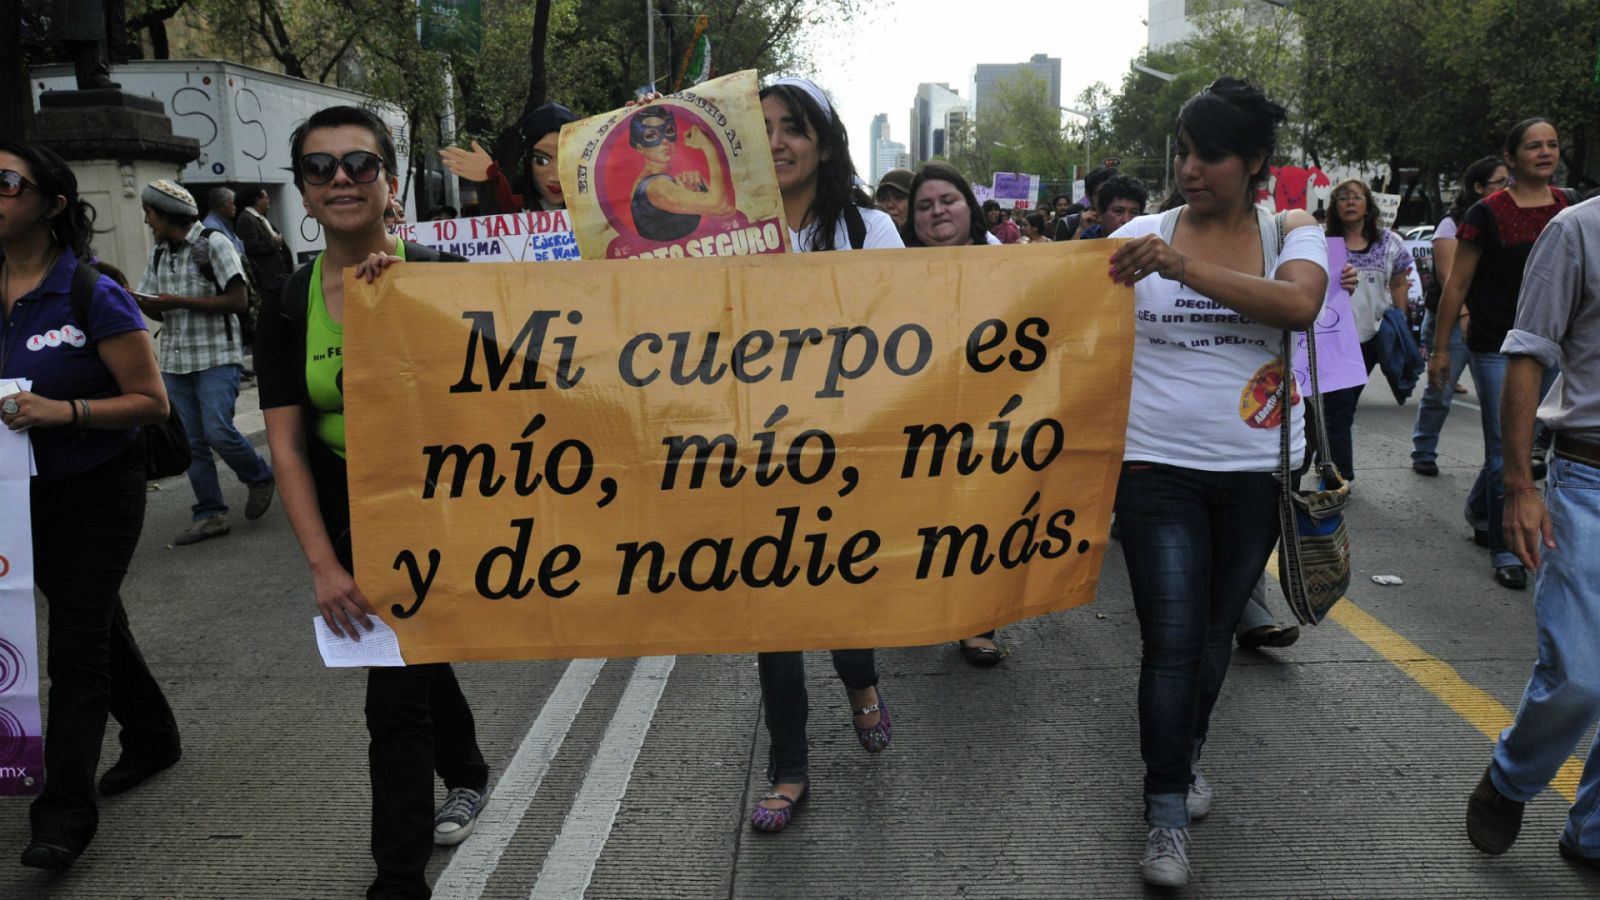 14 horas - Latinoamérica, la región con más abortos pese a tener la legislación más restrictiva - Escuchar ahora